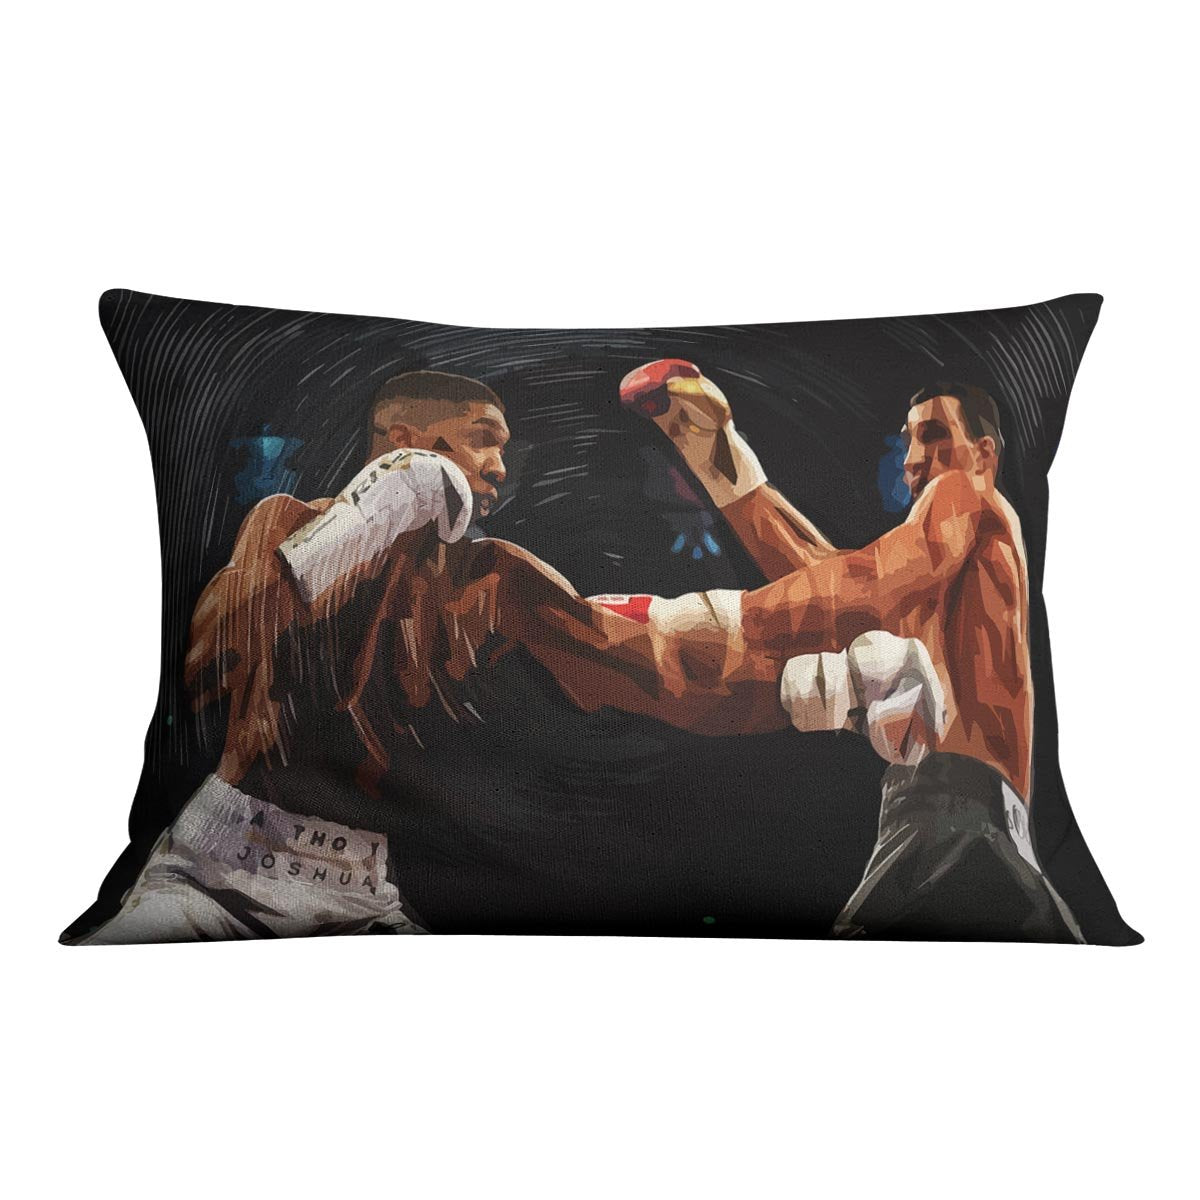 Anthony Joshua vs Klitschko Punch Cushion